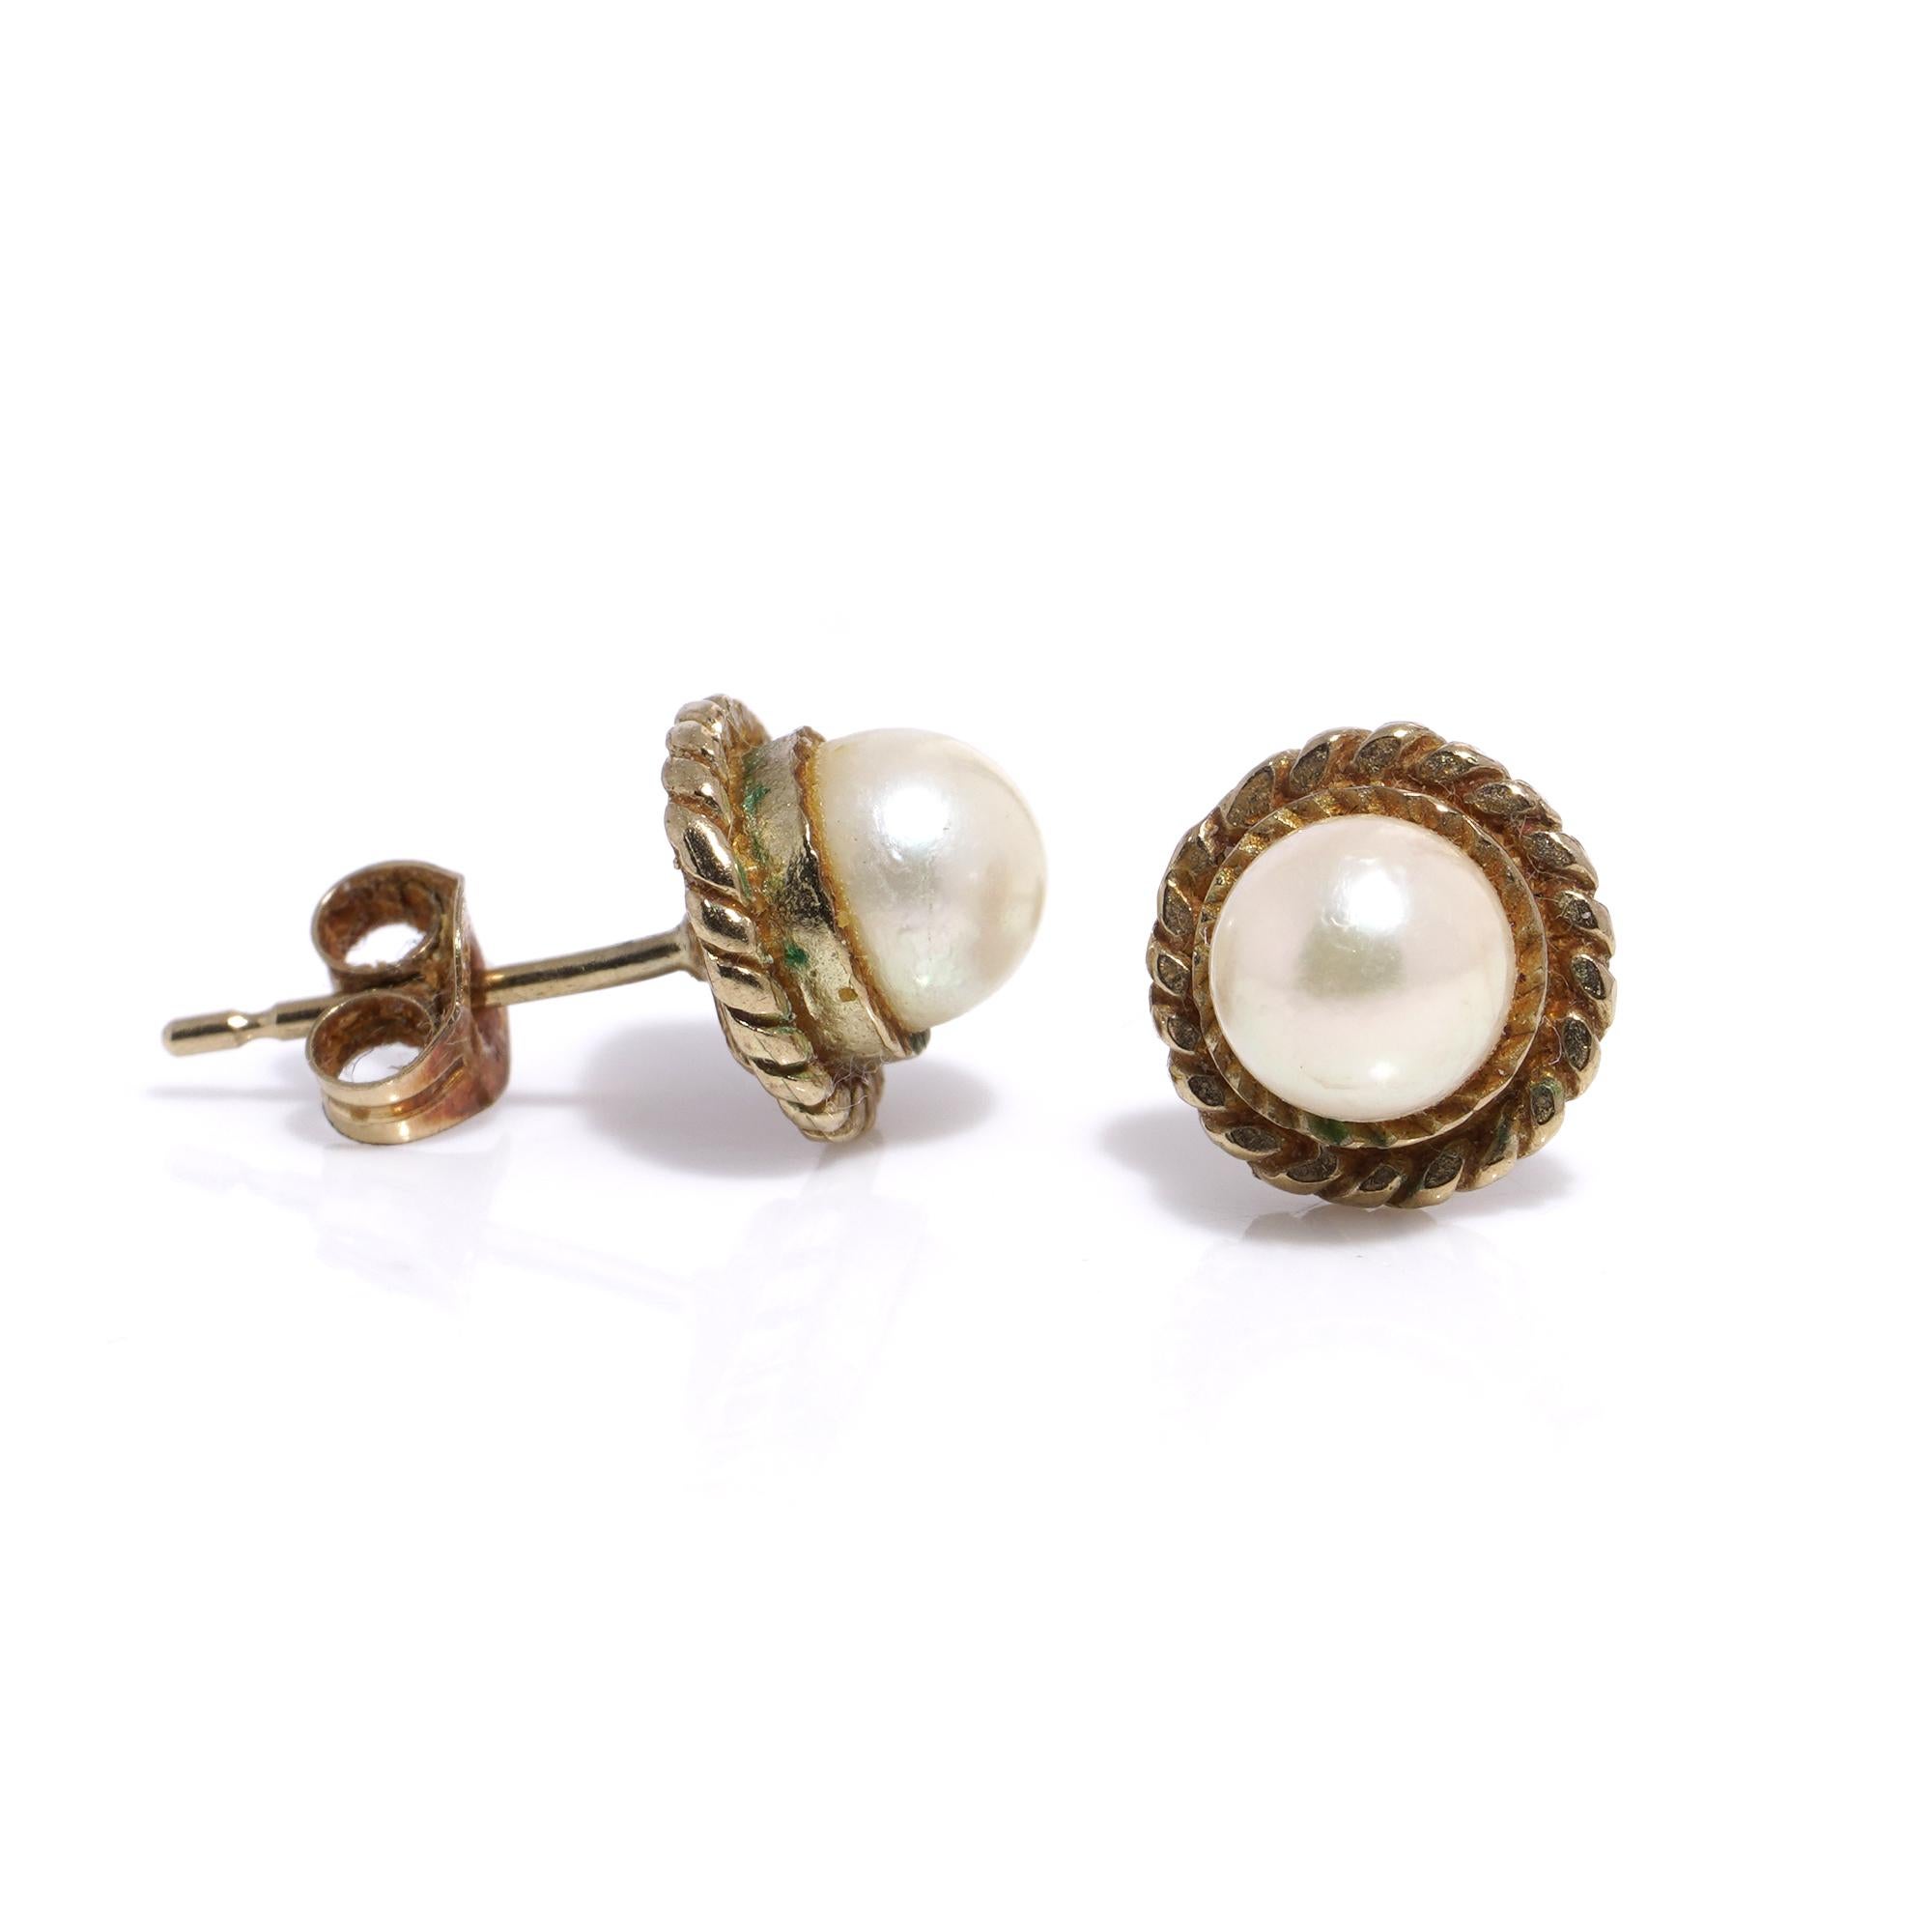 Vintage 9kt or jaune paire de clous d'oreilles en perles.
Les rayons X ont révélé la présence d'or 9kt.
Les papillons sont poinçonnés à l'or 9kt.

Dimensions -
Diamètre : 7 mm
Poids : 1 gramme

Taille de la perle : 5 mm de diamètre

Condit : Les